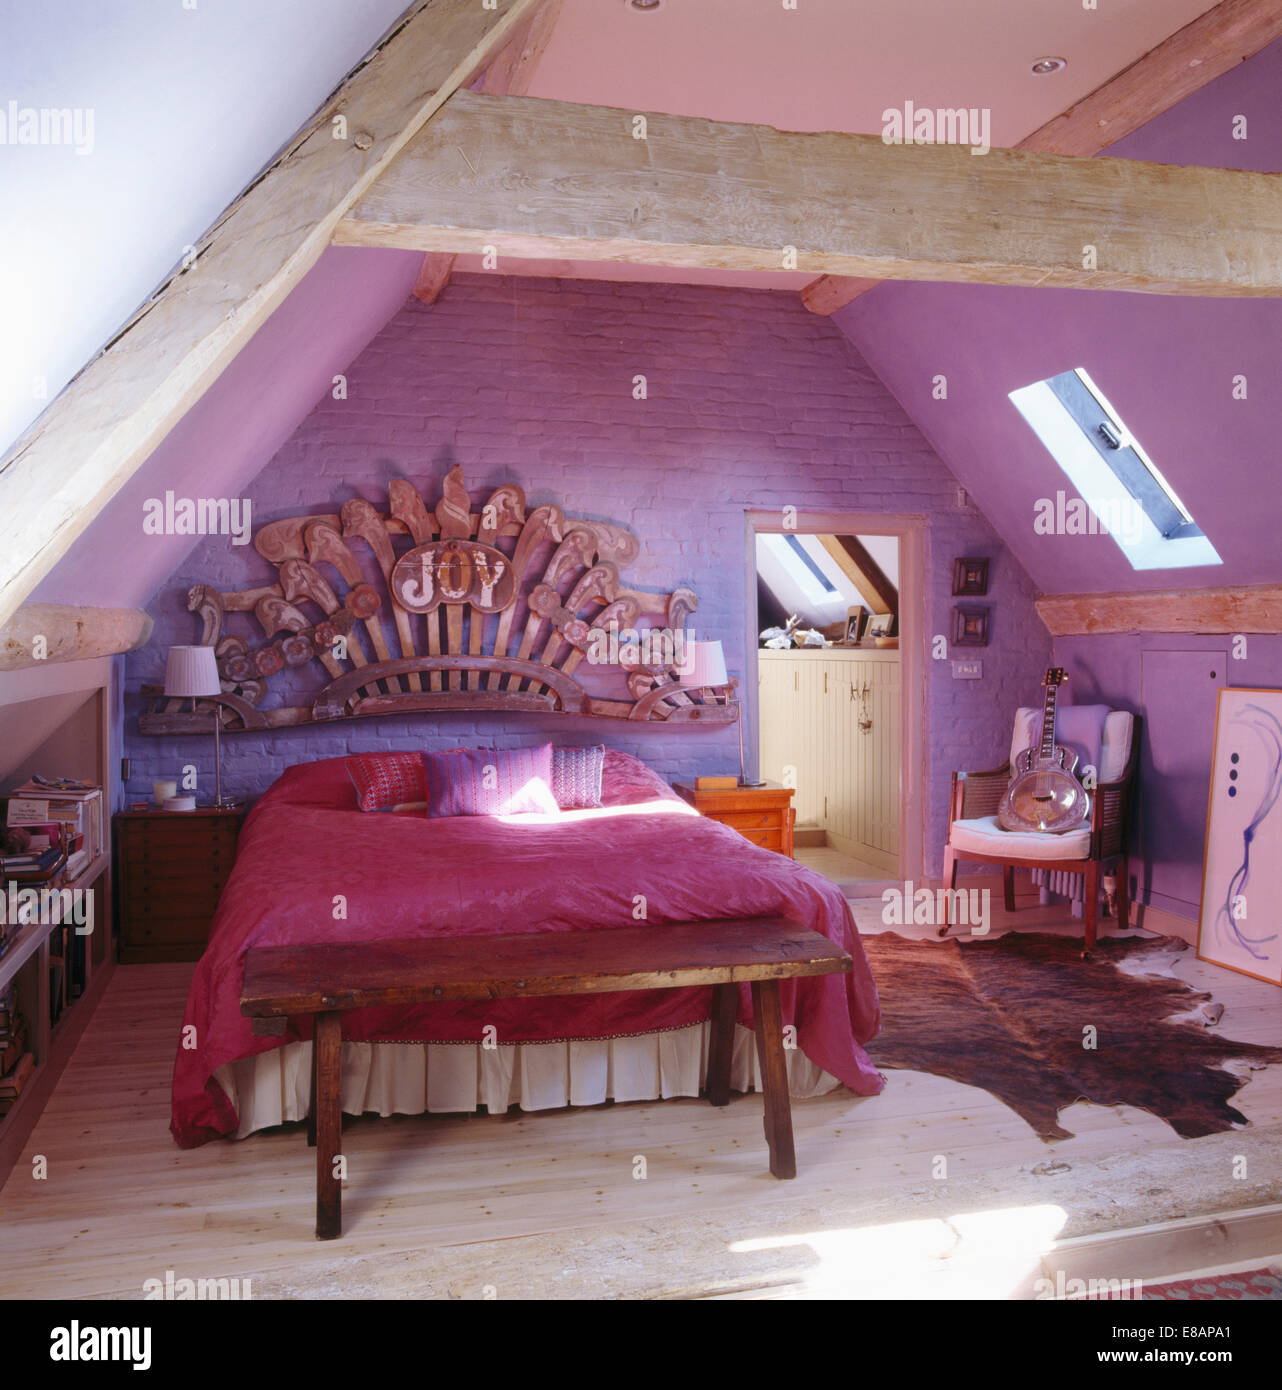 Grande sculpture en bois au-dessus de lit avec couvre-lit rose mauve dans une chambre mansardée Banque D'Images